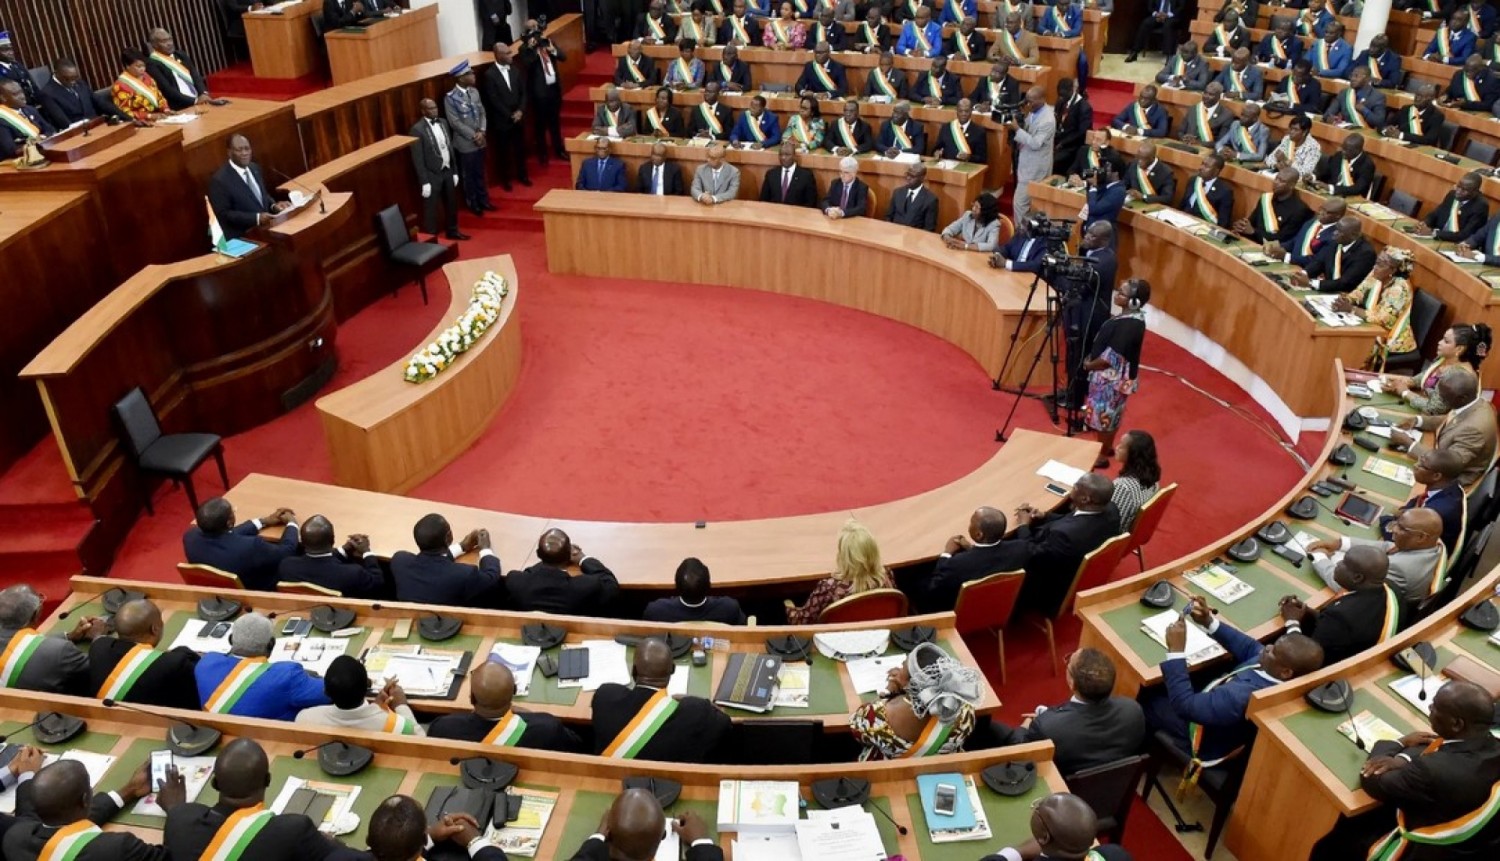 Côte d'Ivoire:   Parlement, deux sessions ordinaires prévues dans l'année, la première de janvier à juin et la seconde d'octobre à décembre